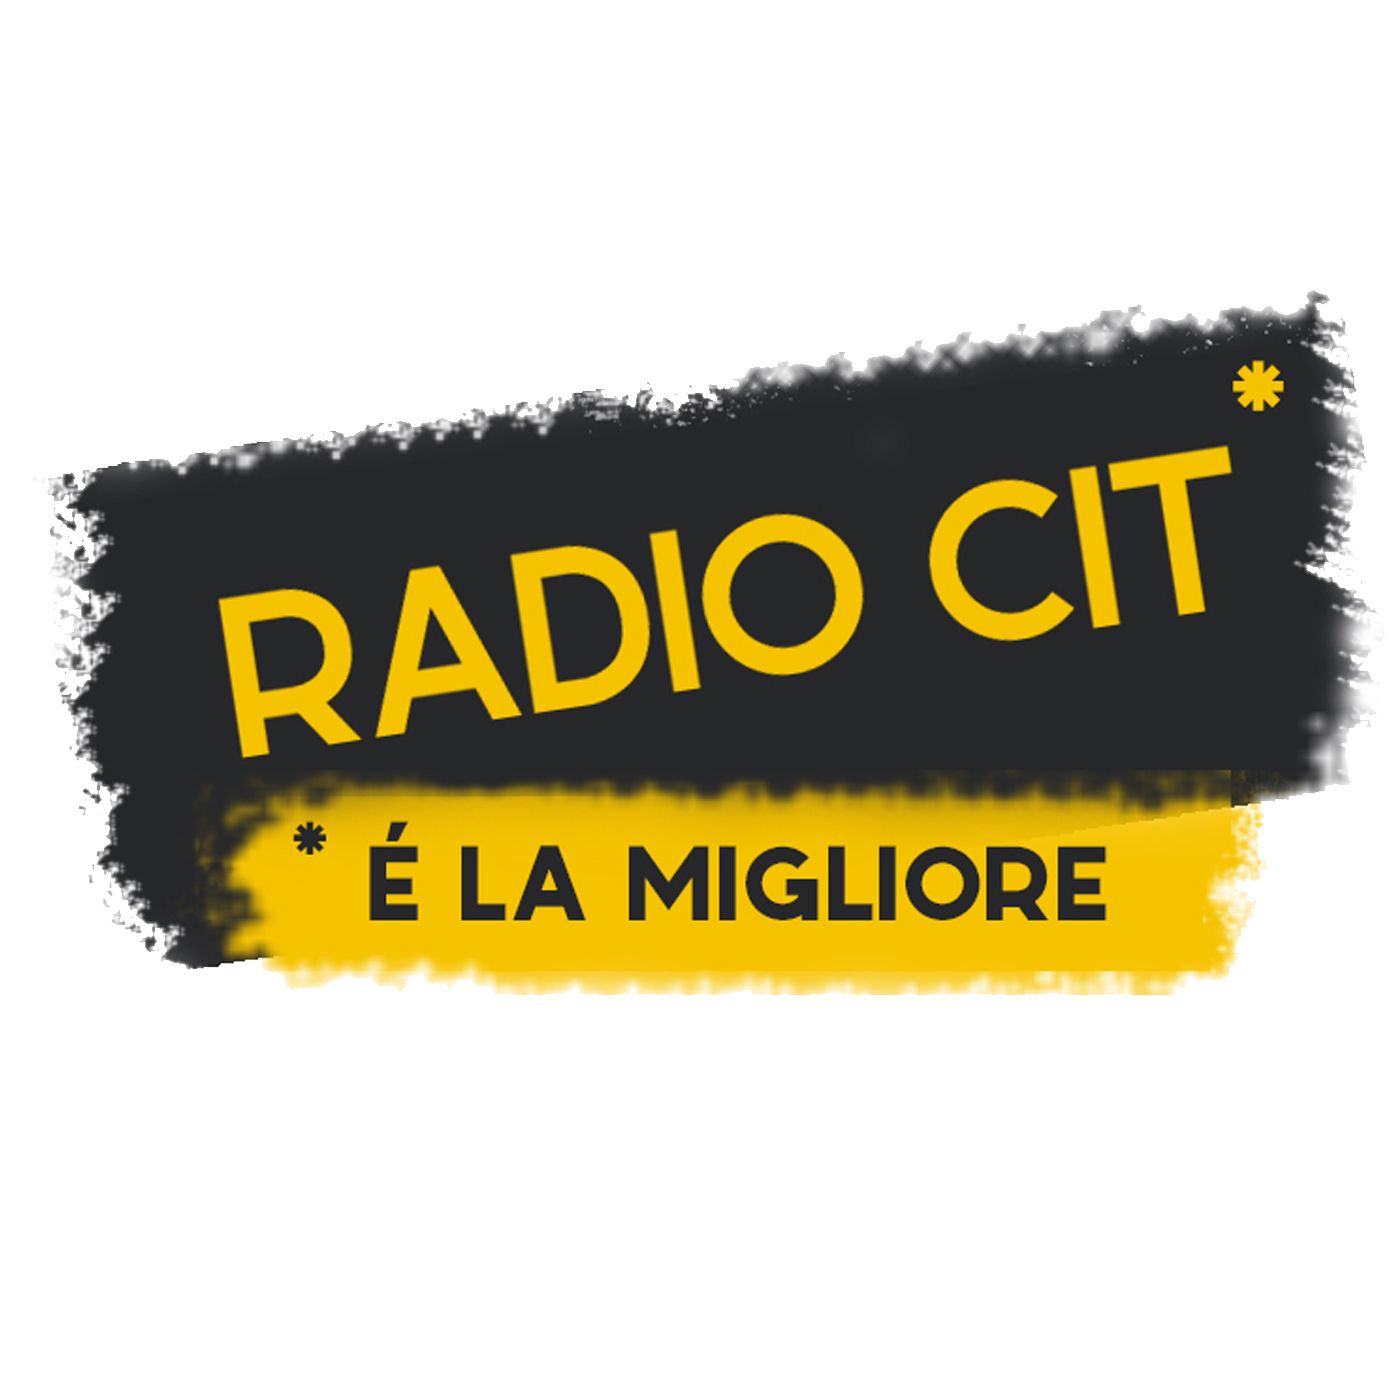 Radio CIT *è la migliore!